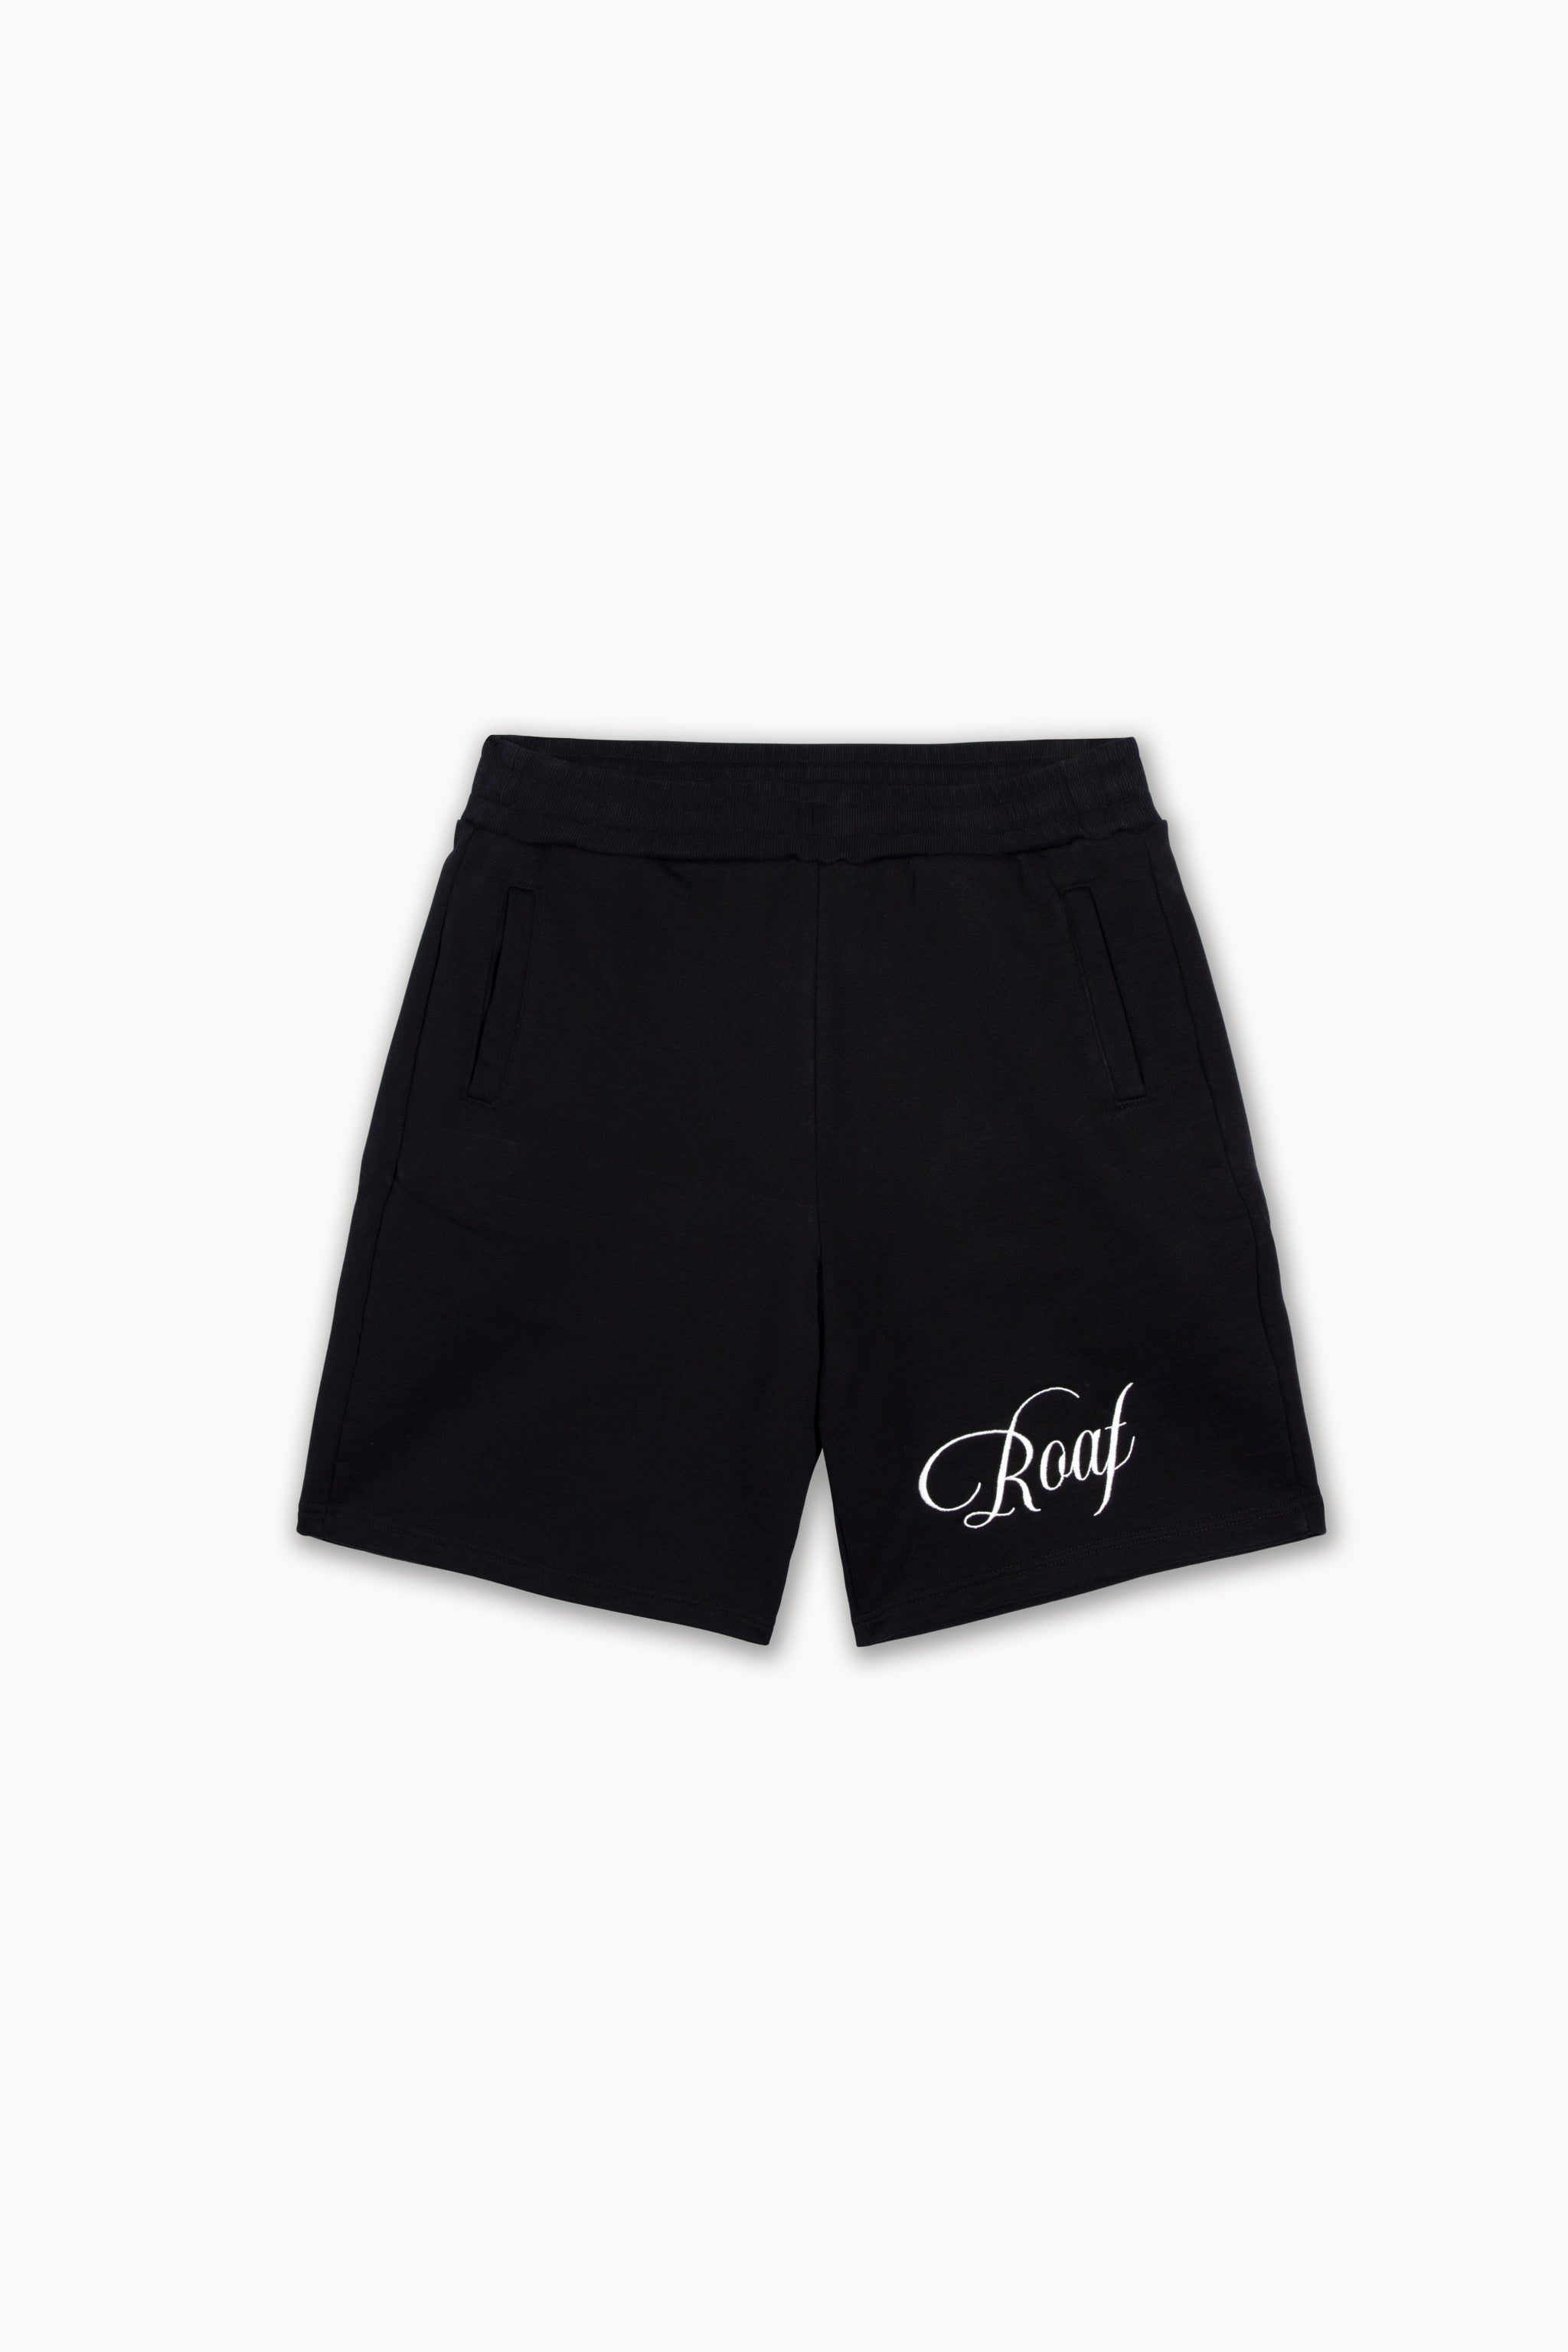 ROAF Sweat Shorts